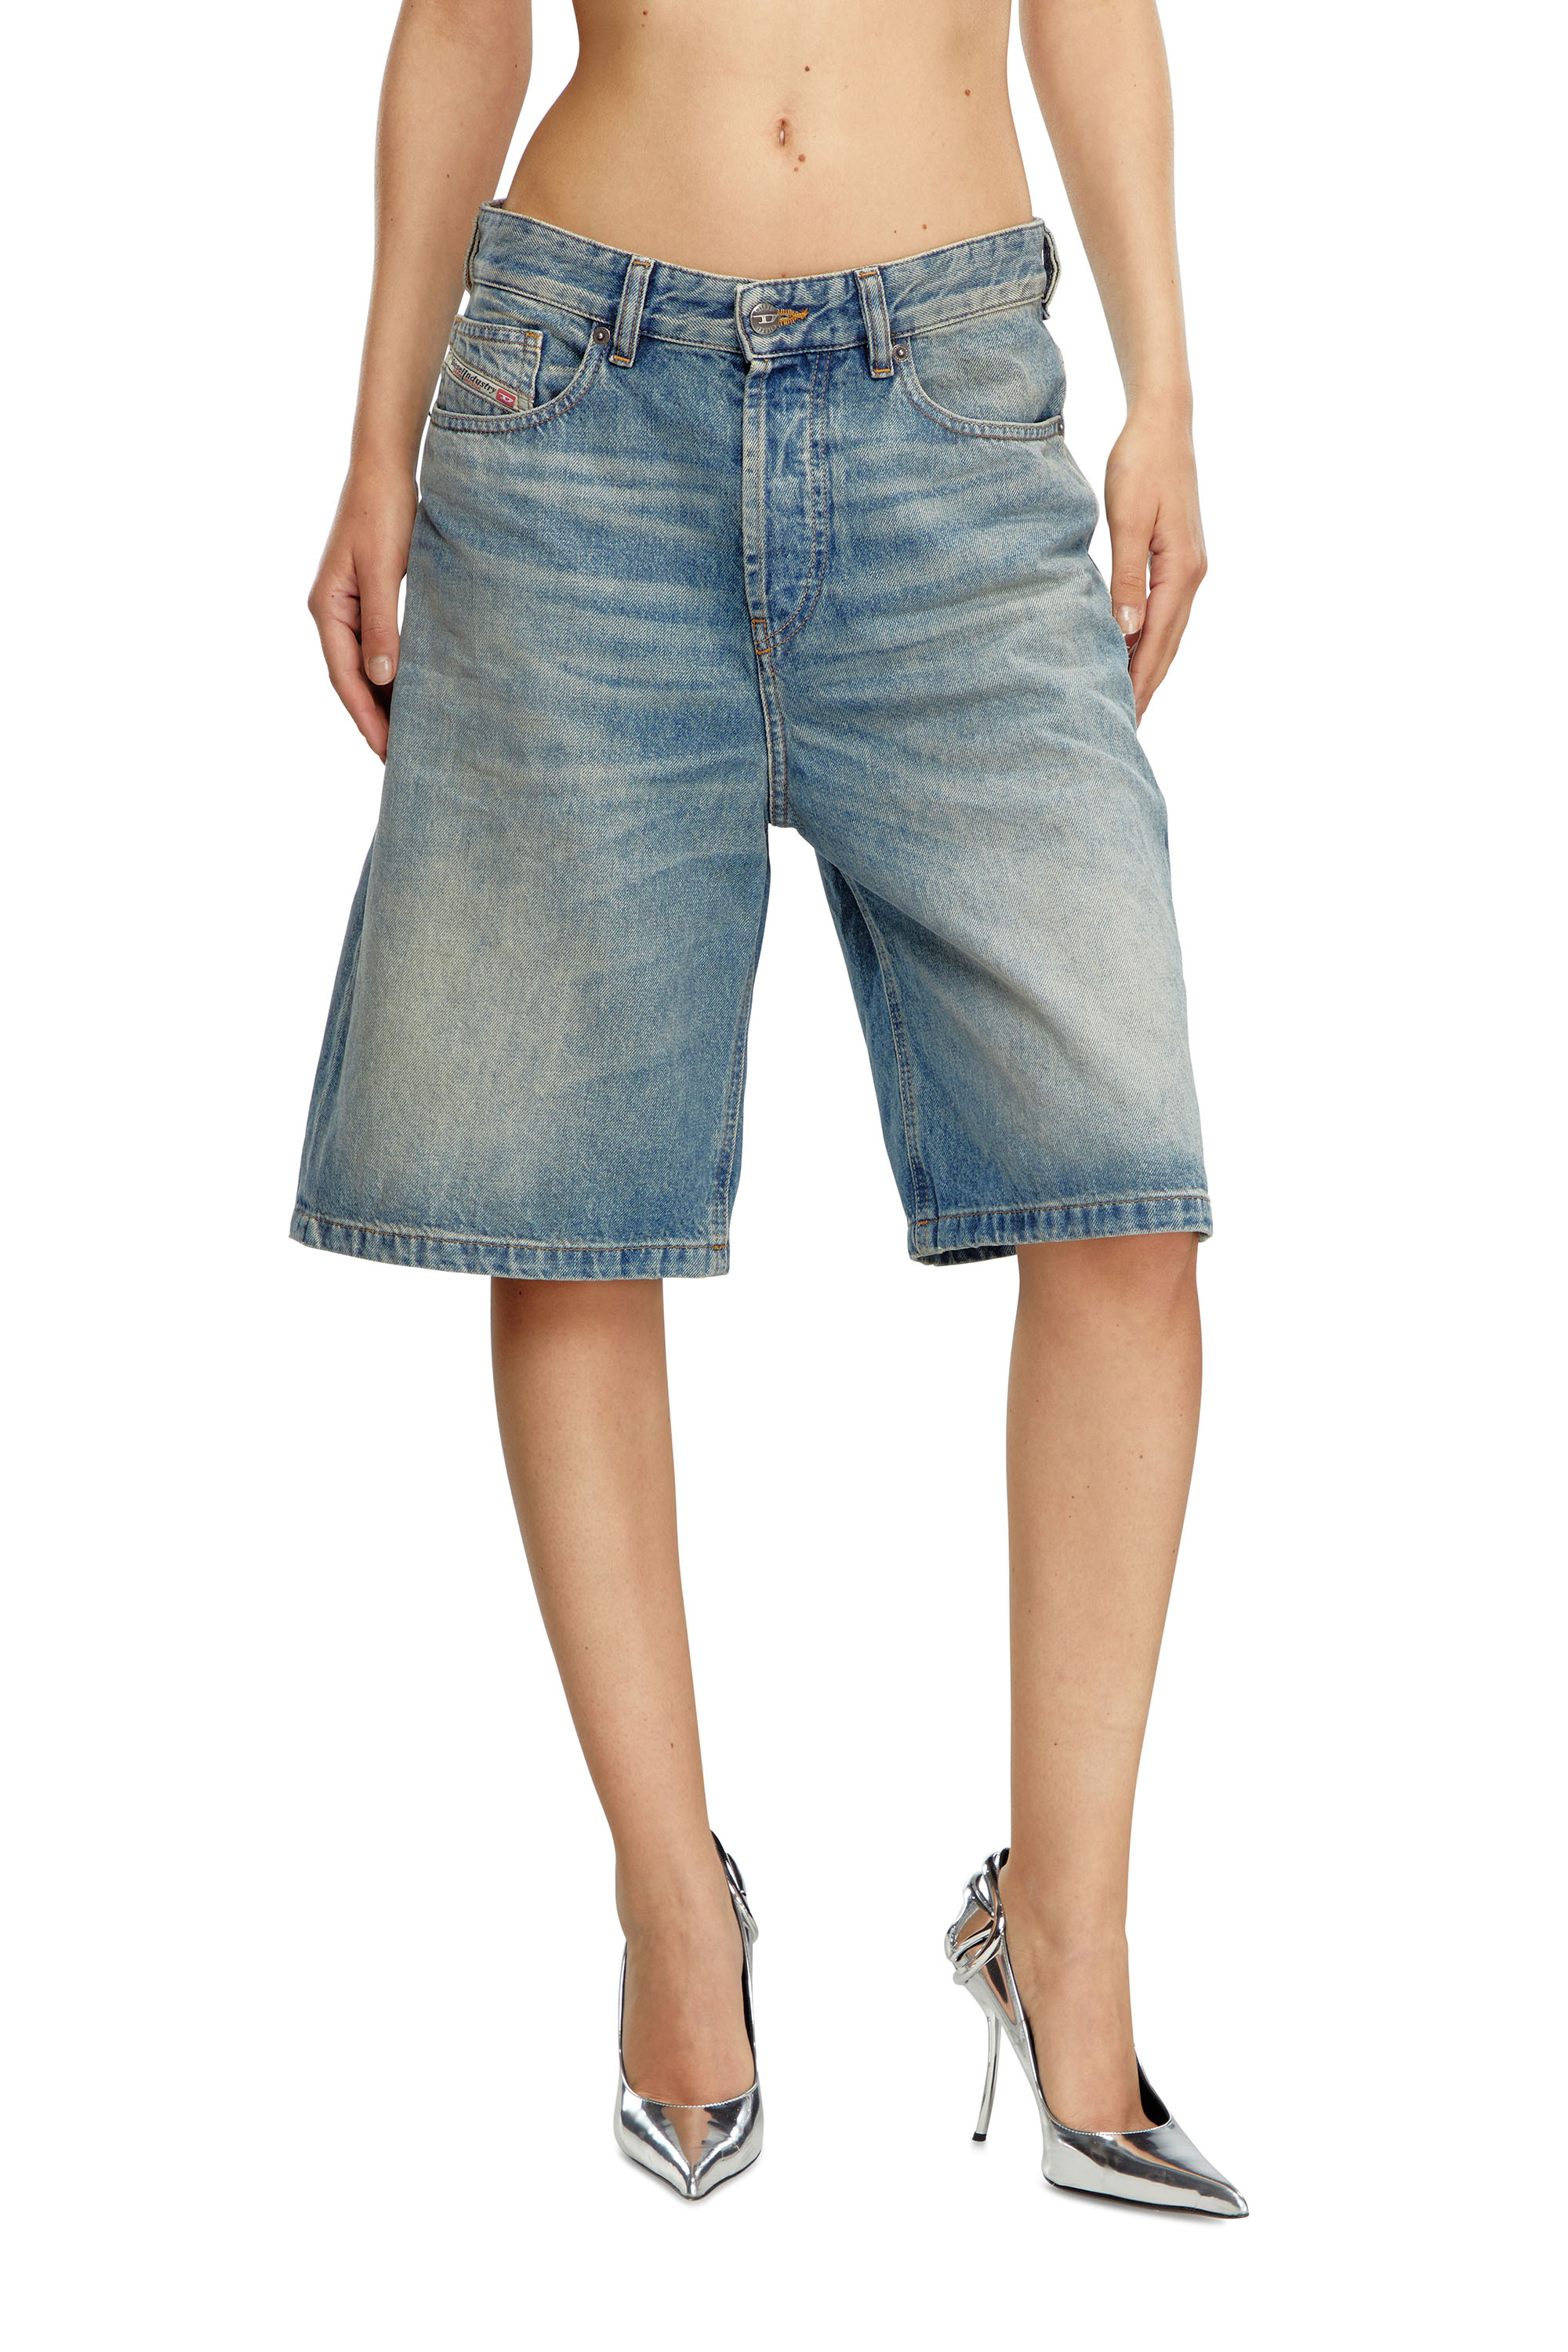 Women's Shorts: in Jeans, in Cotton, Sporty | Diesel®